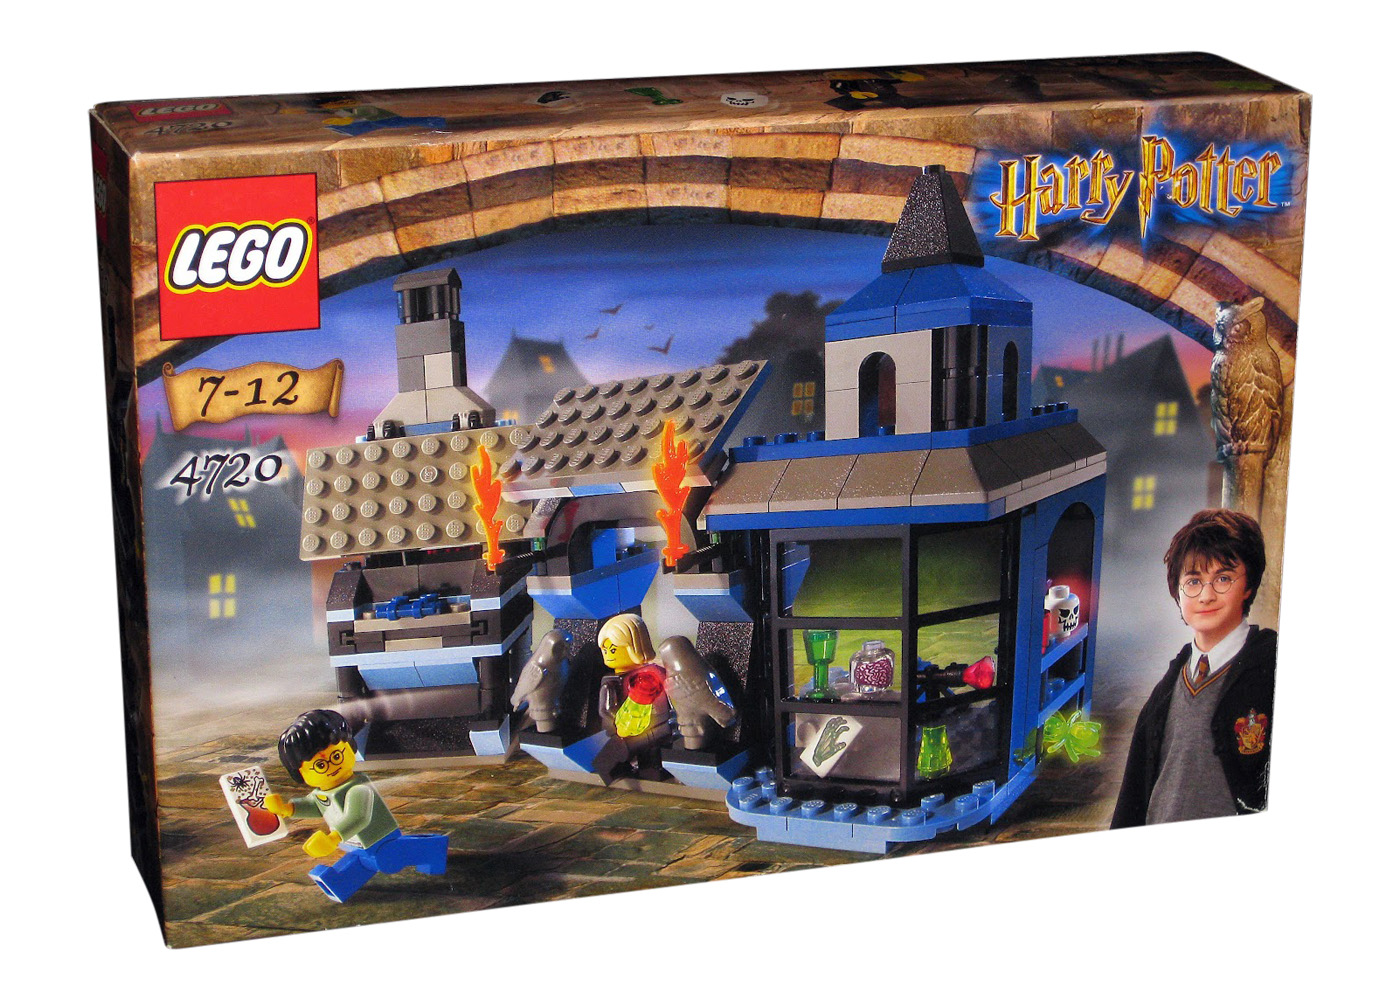 LEGO Harry Potter Knockturn Alley Set 4720 - US